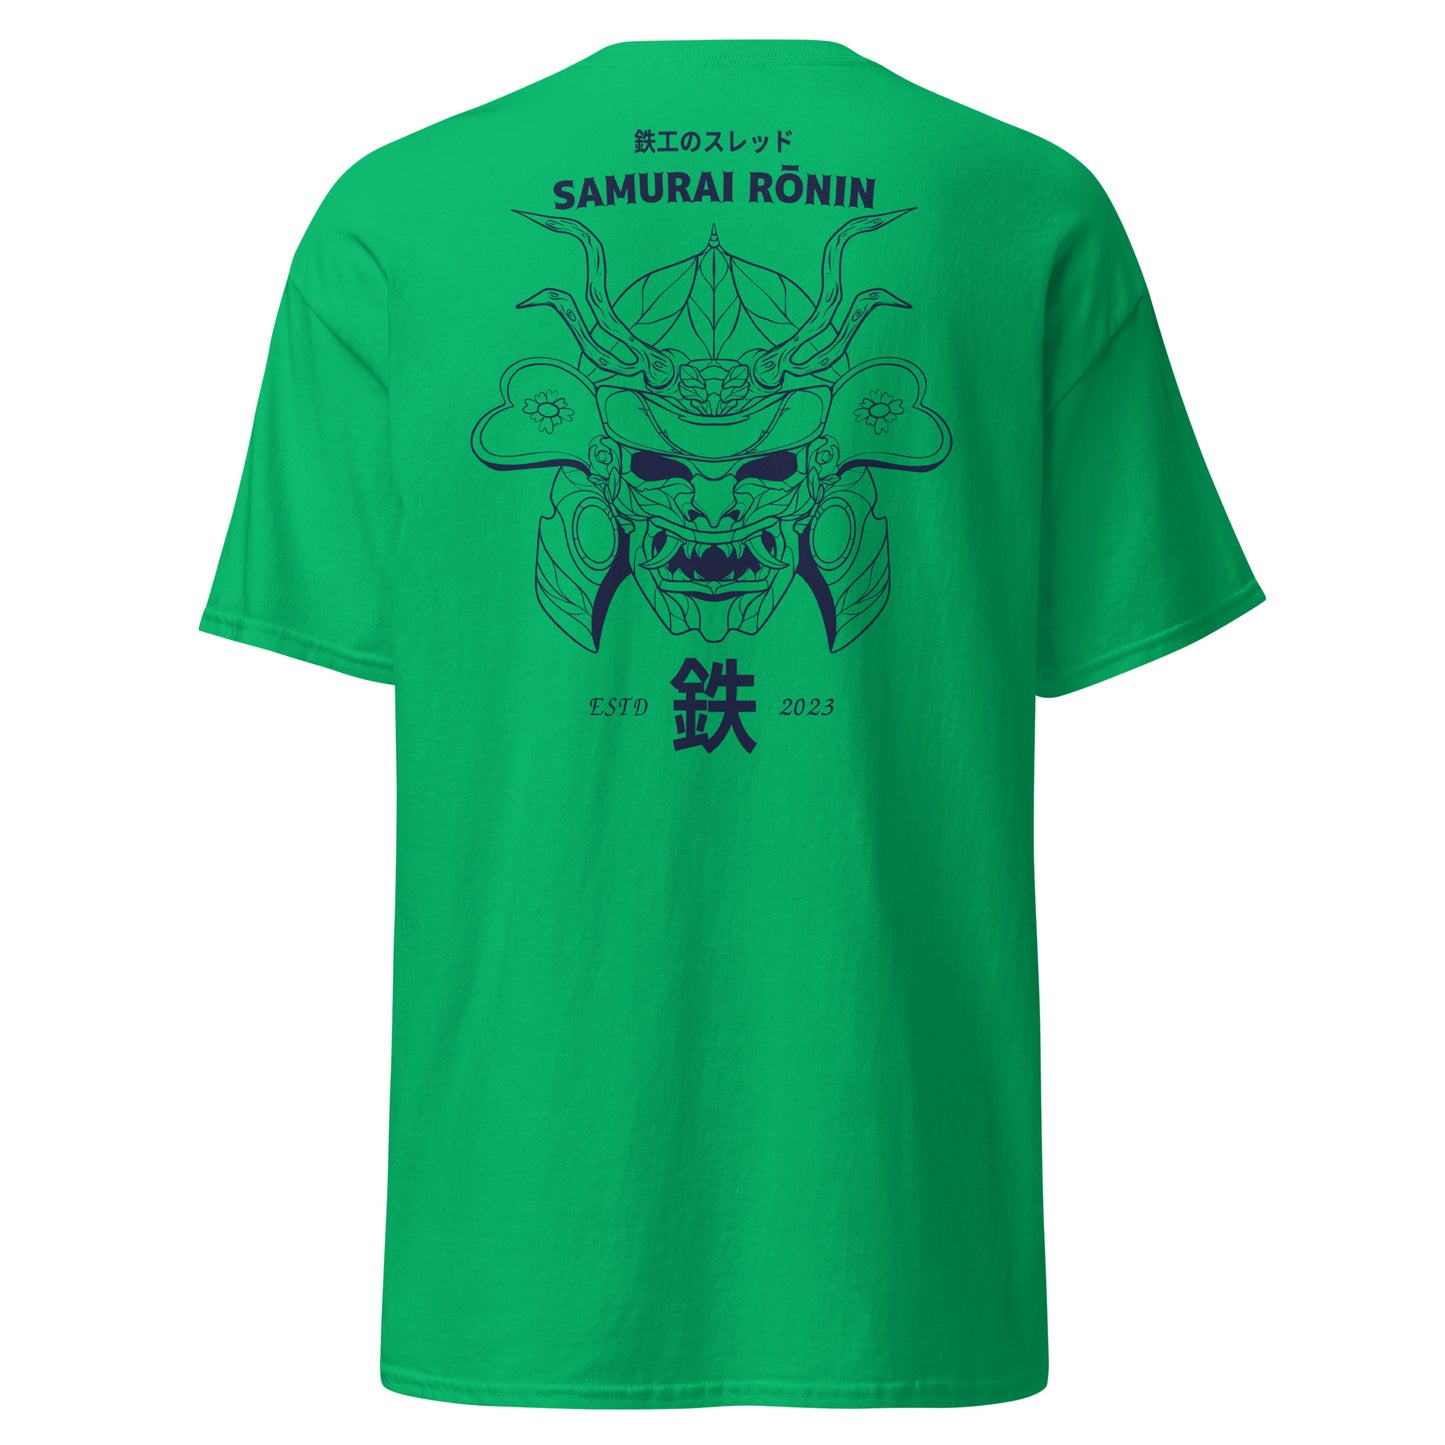 Samurai Rōnin T-shirt